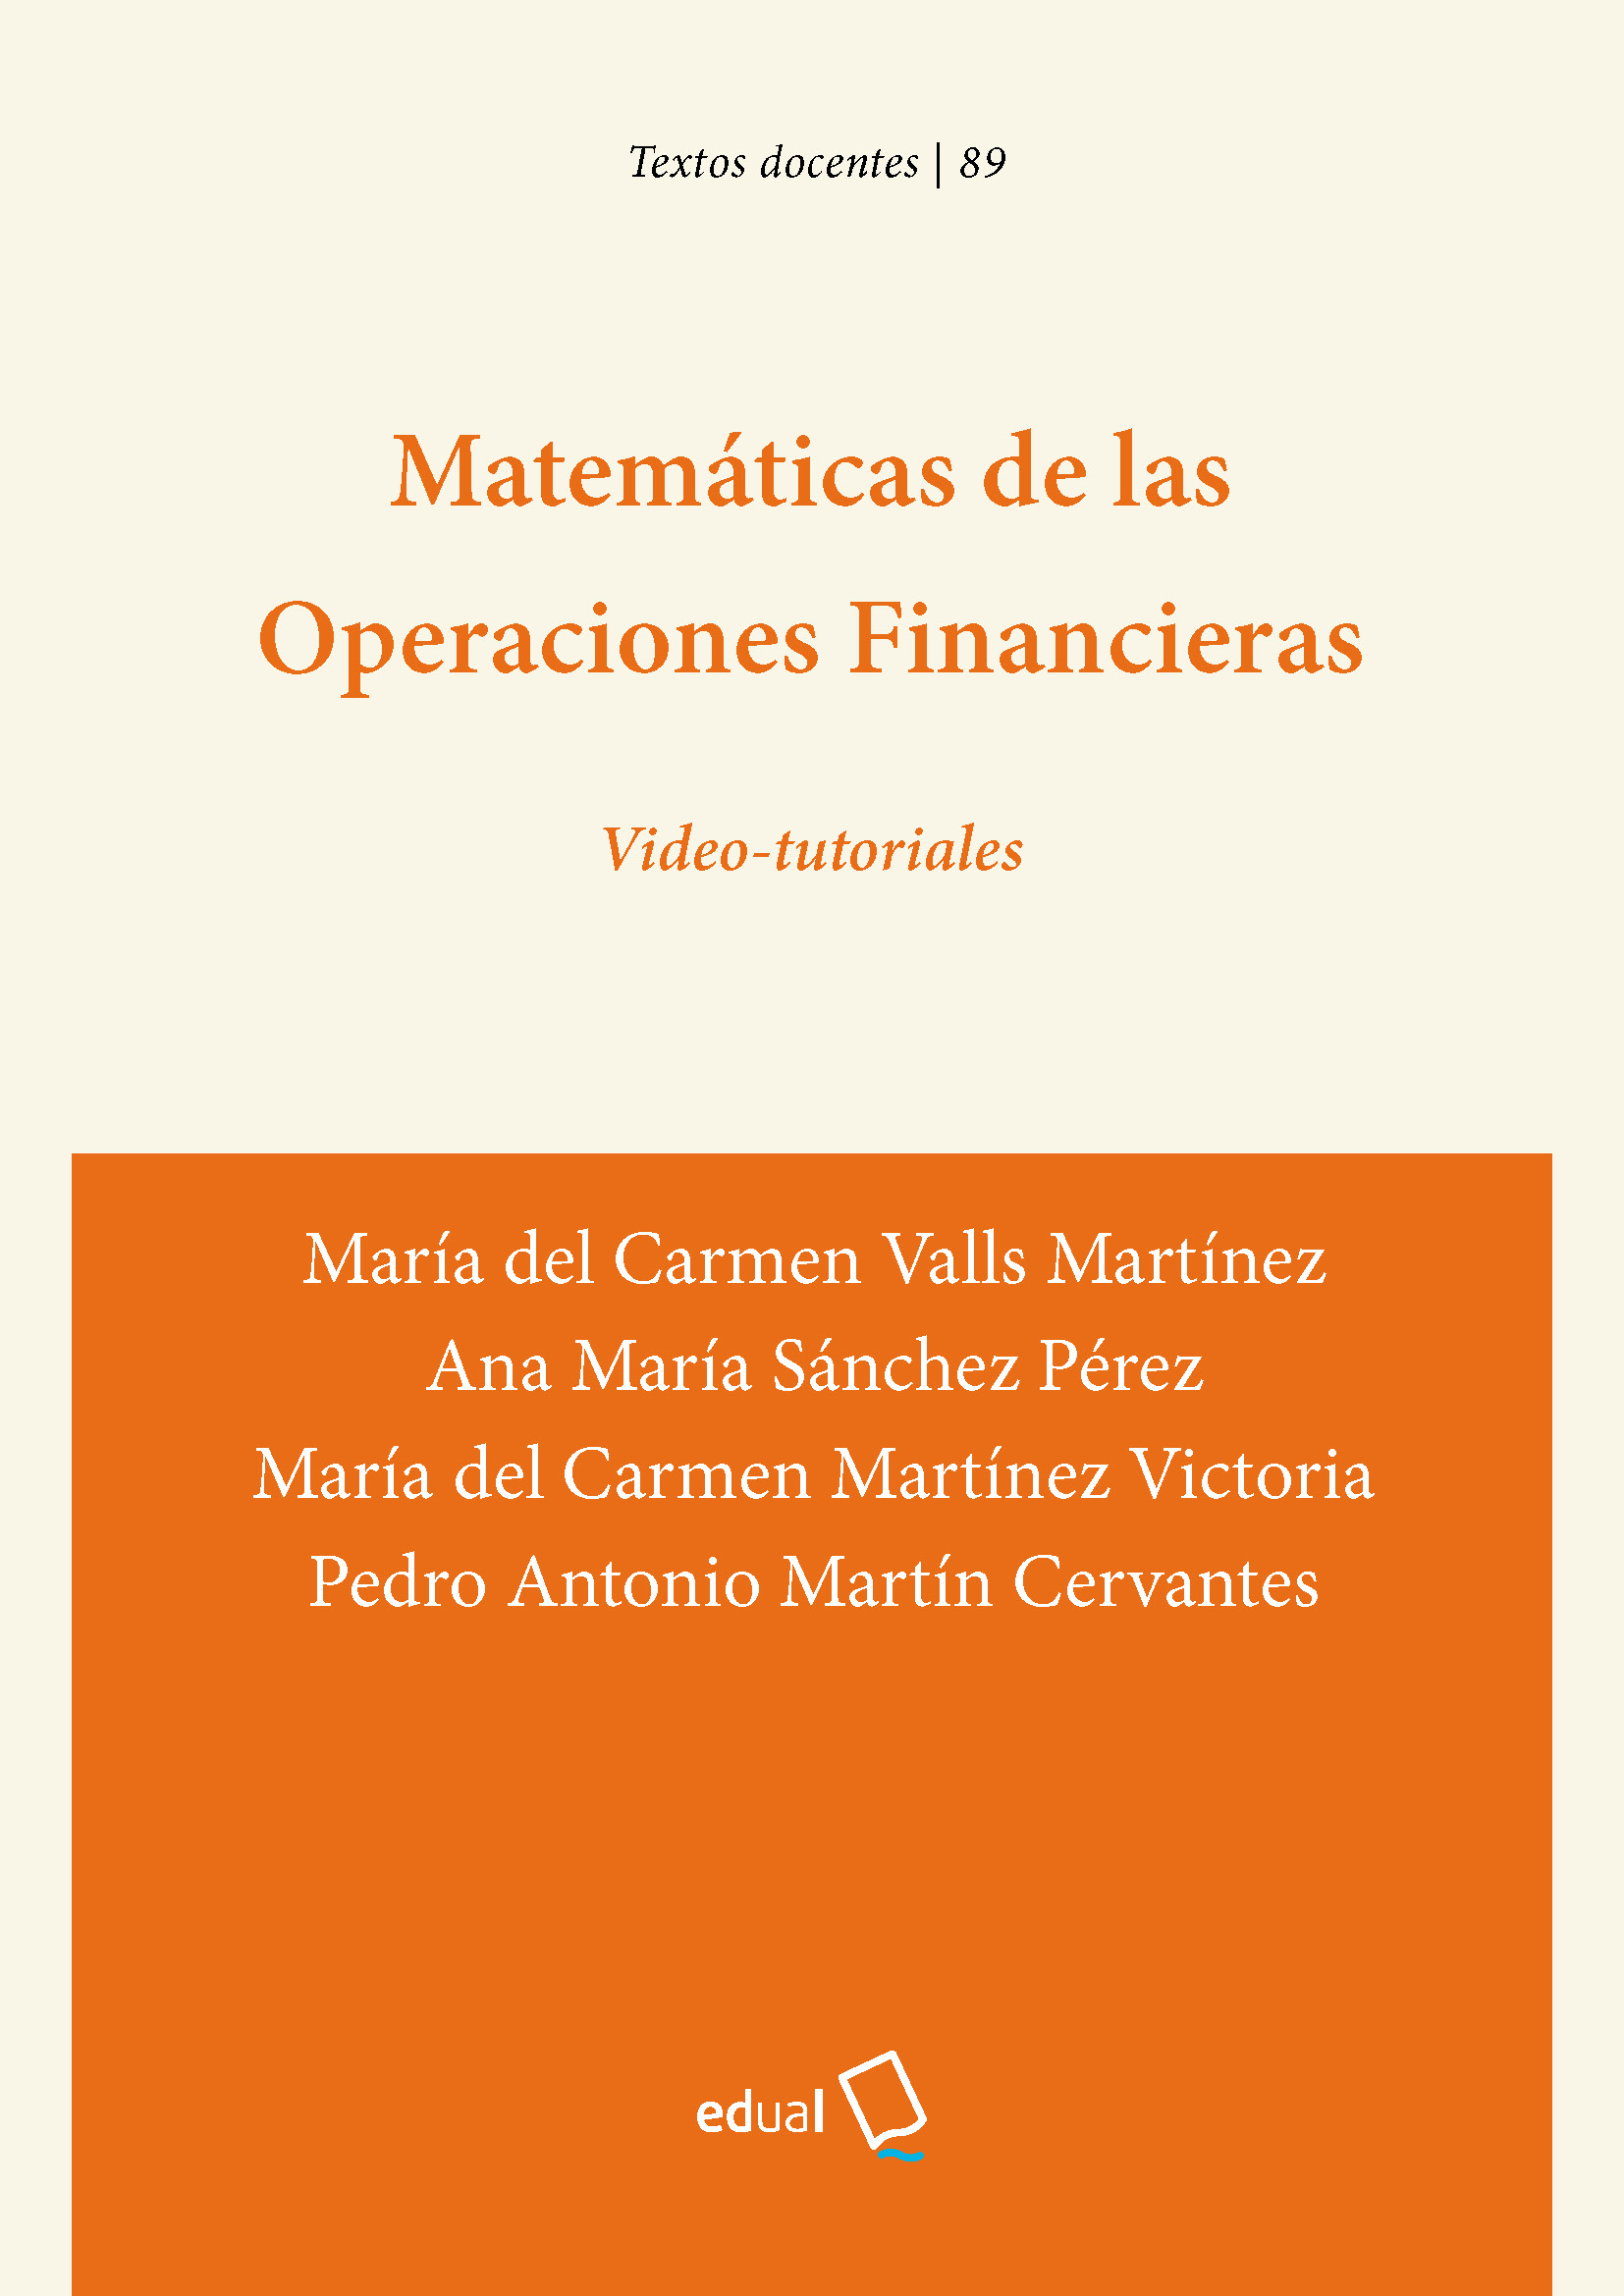 Imagen de portada del libro Matemáticas de las Operaciones Financieras